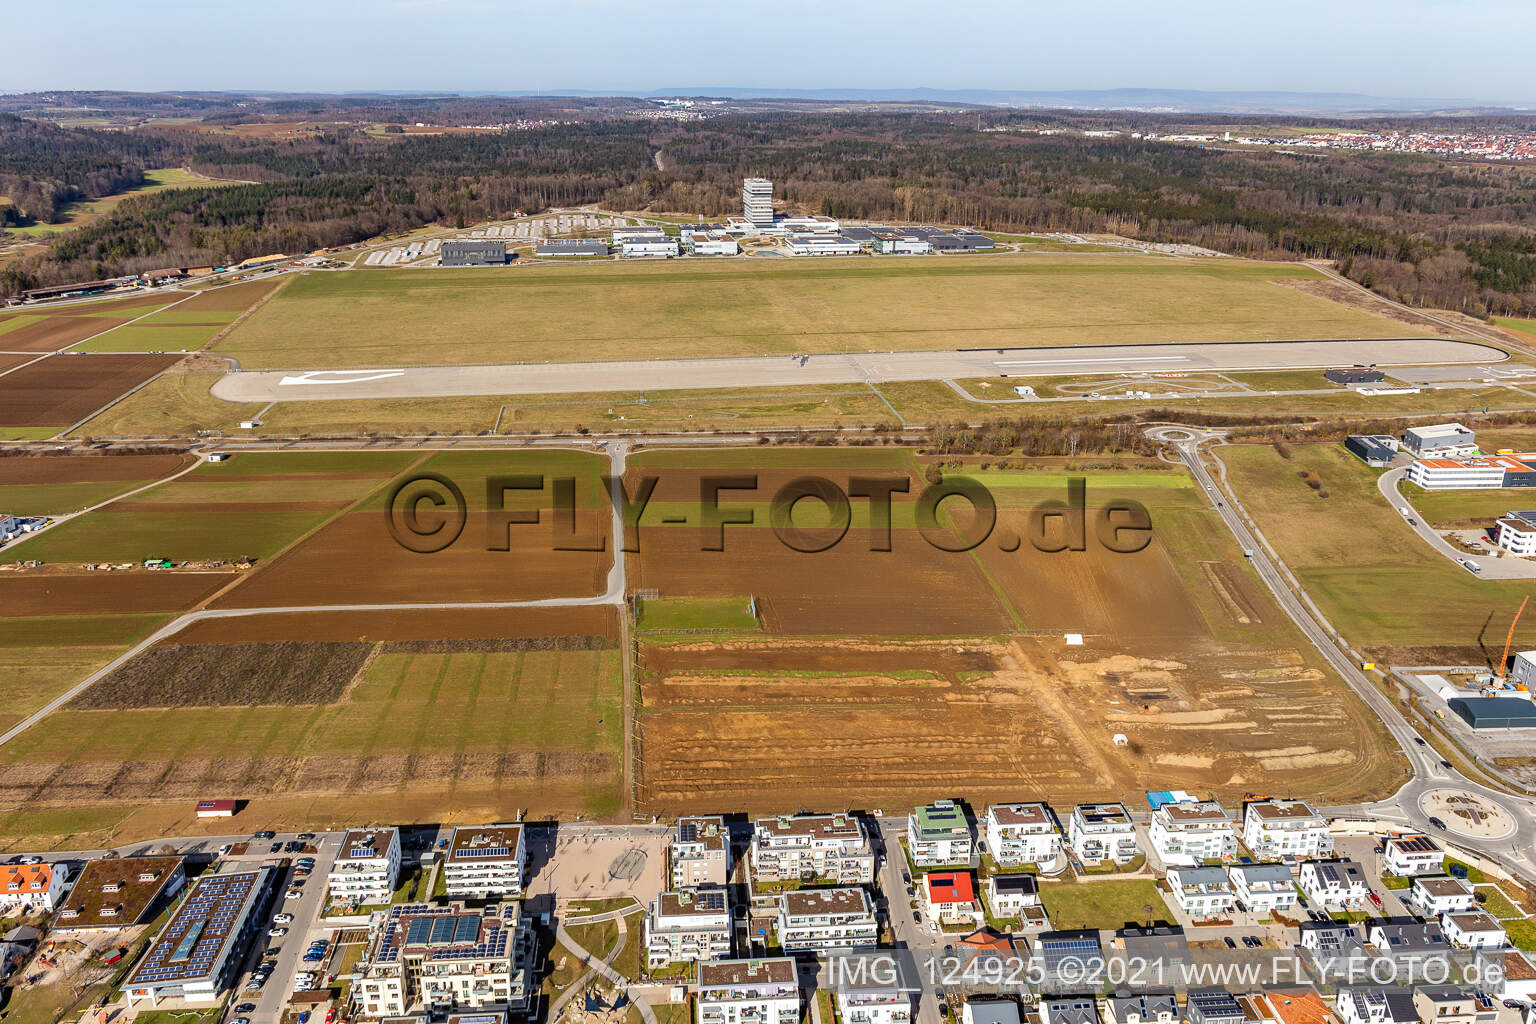 Photographie aérienne de Centre de recherche Robert Bosch GmbH à l'aérodrome de Malmsheim à Renningen dans le département Bade-Wurtemberg, Allemagne